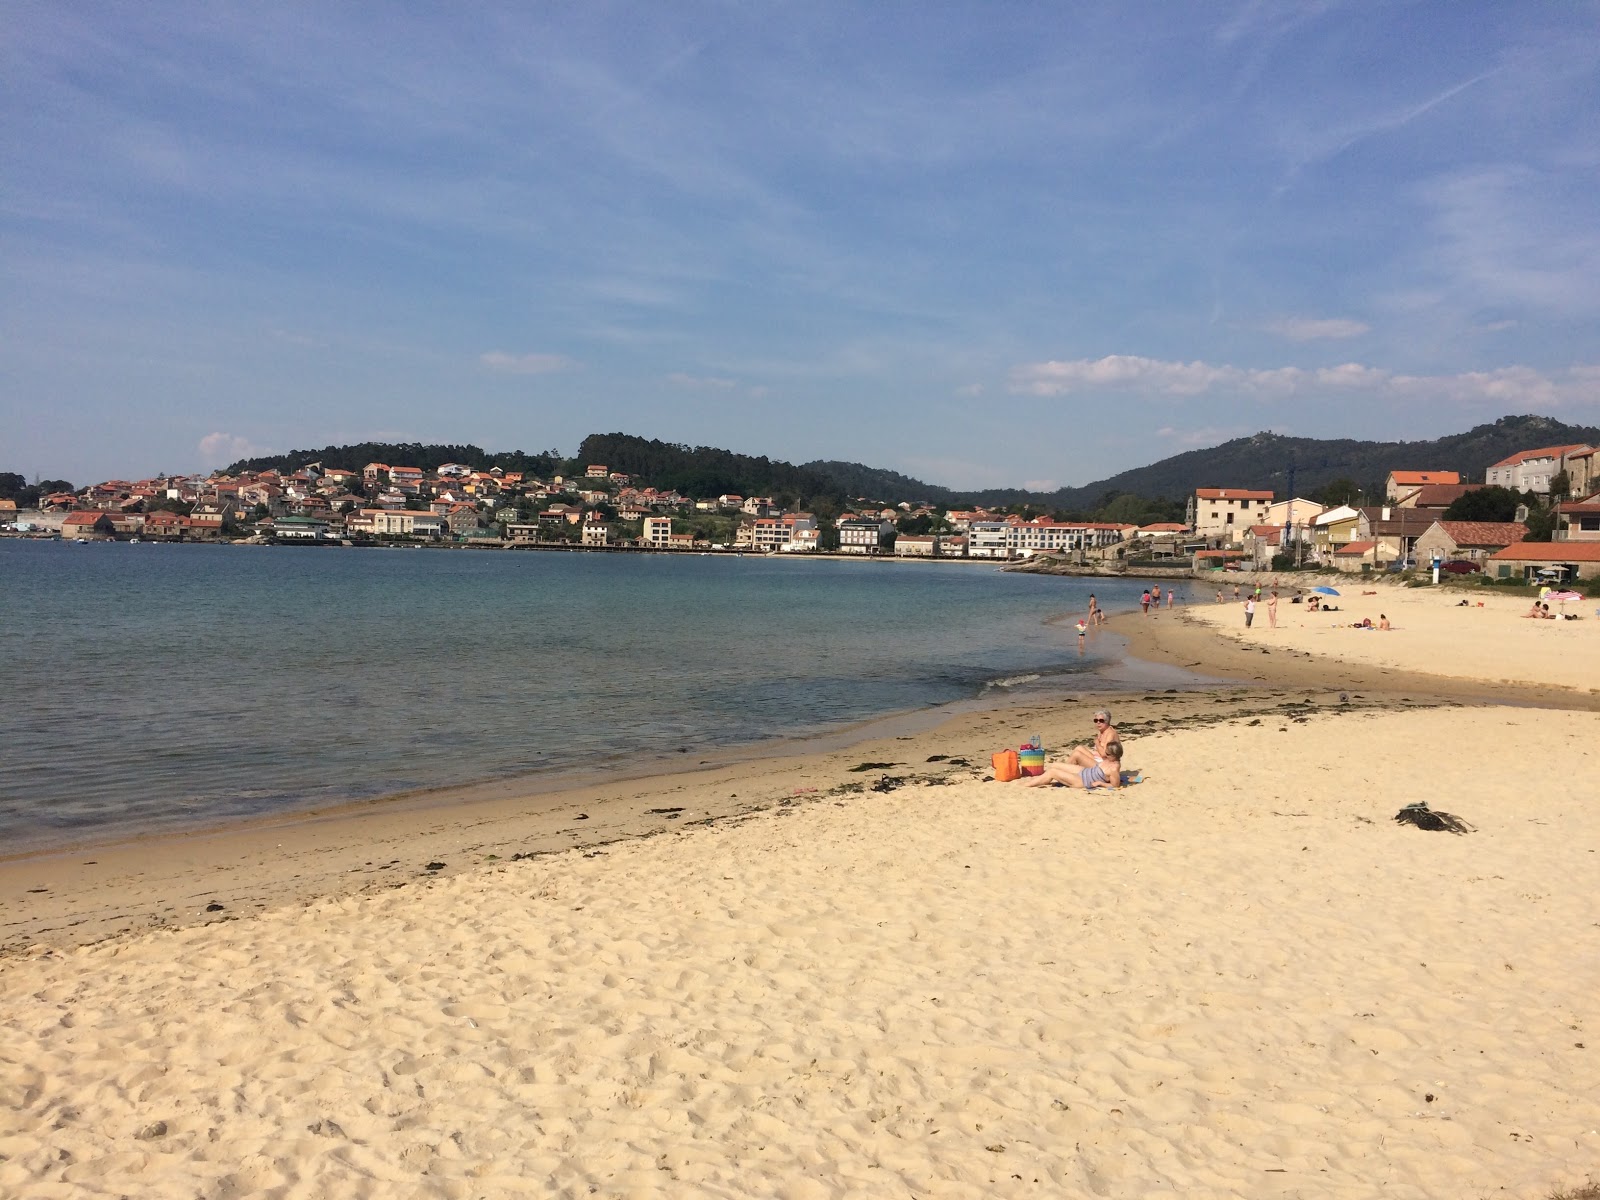 Fotografie cu Praia de Vilarino - locul popular printre cunoscătorii de relaxare